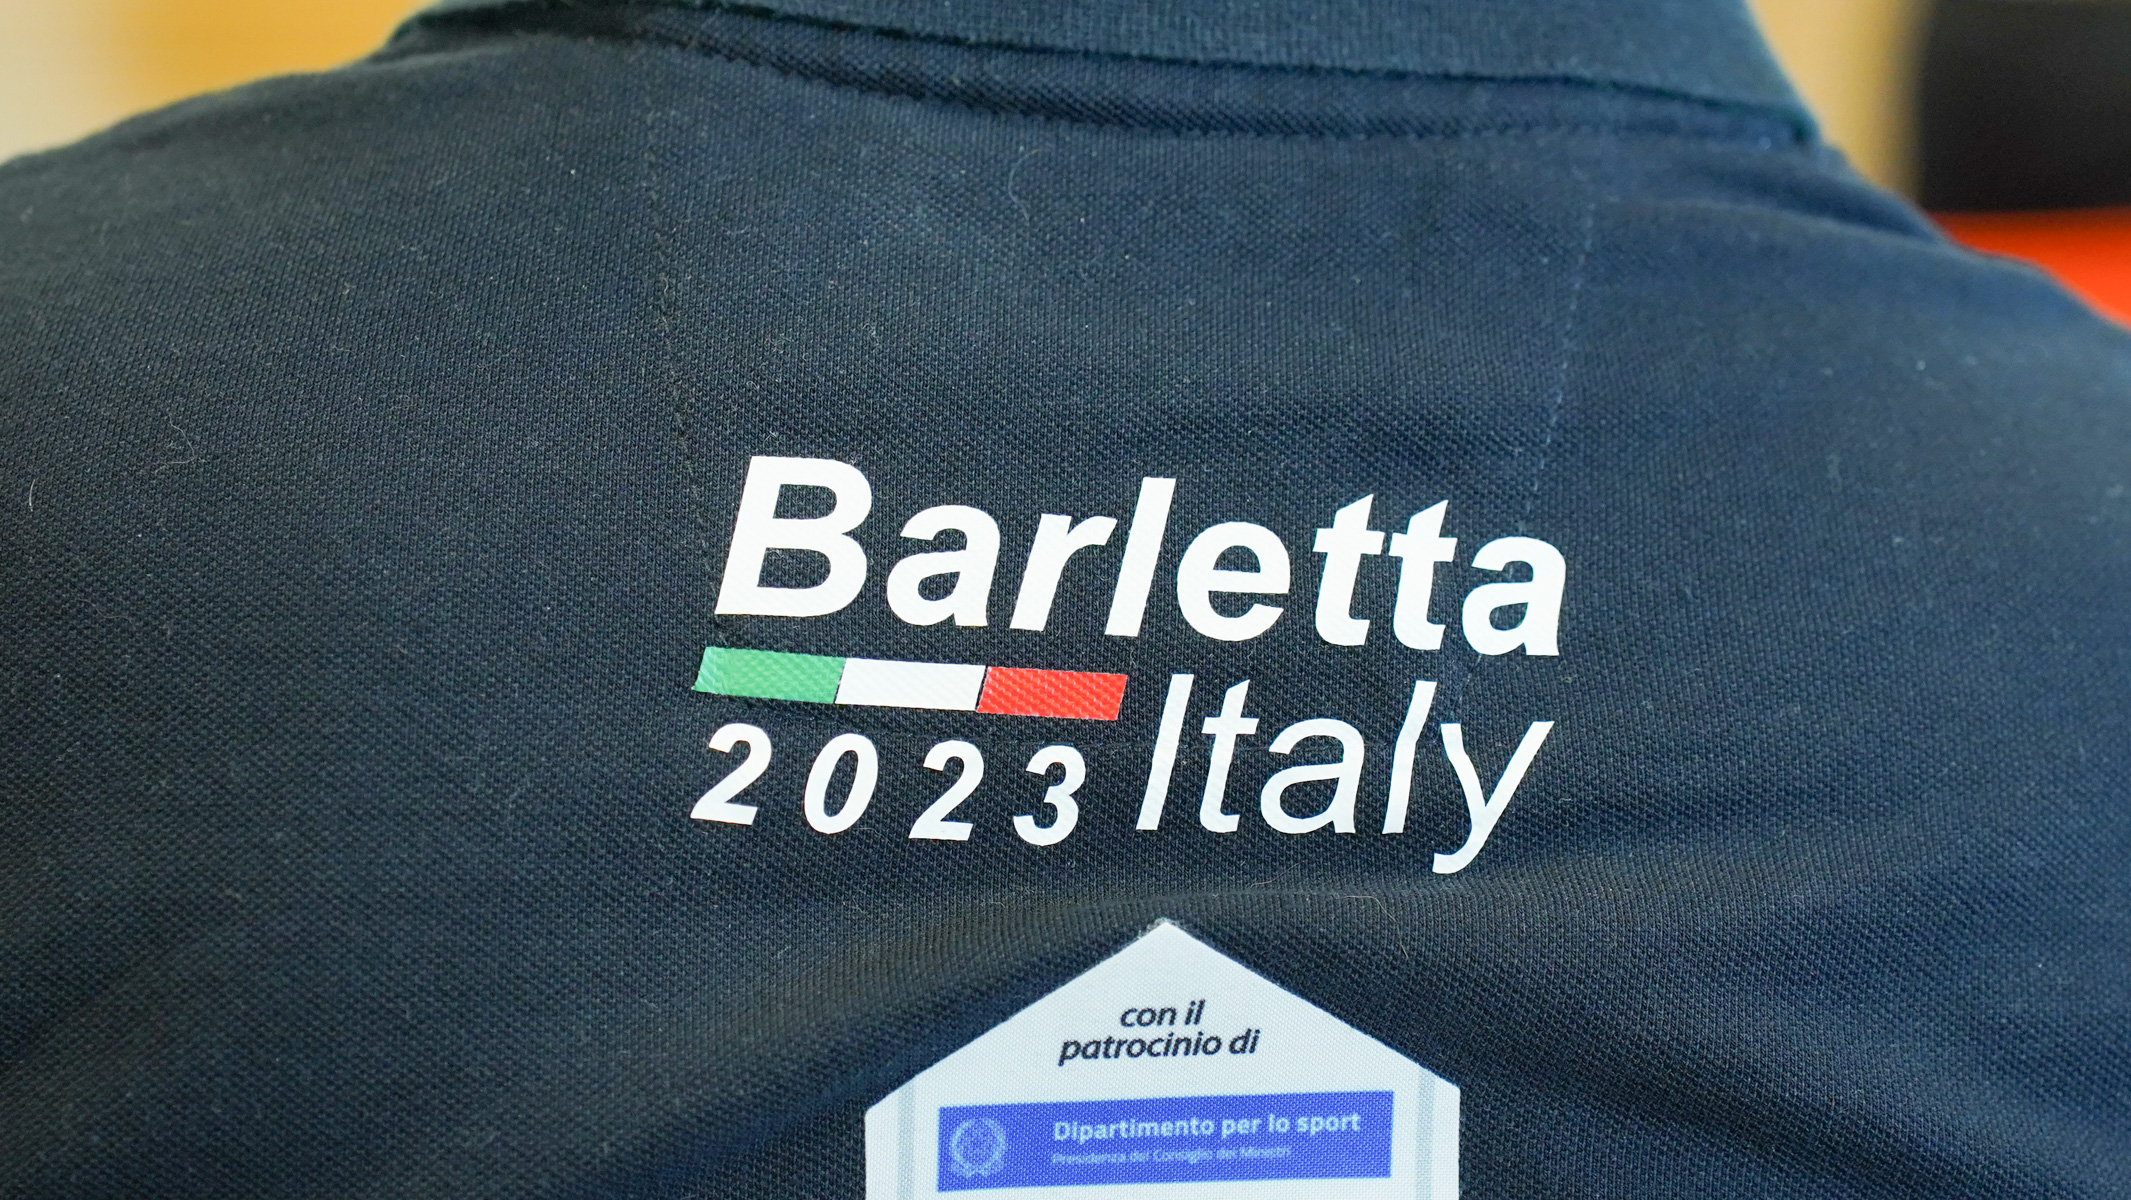 Galleria Mondiali di Coastal Rowing e Beach Sprint 2023 a Barletta,  svelato il logo della manifestazione - Diapositiva 6 di 13